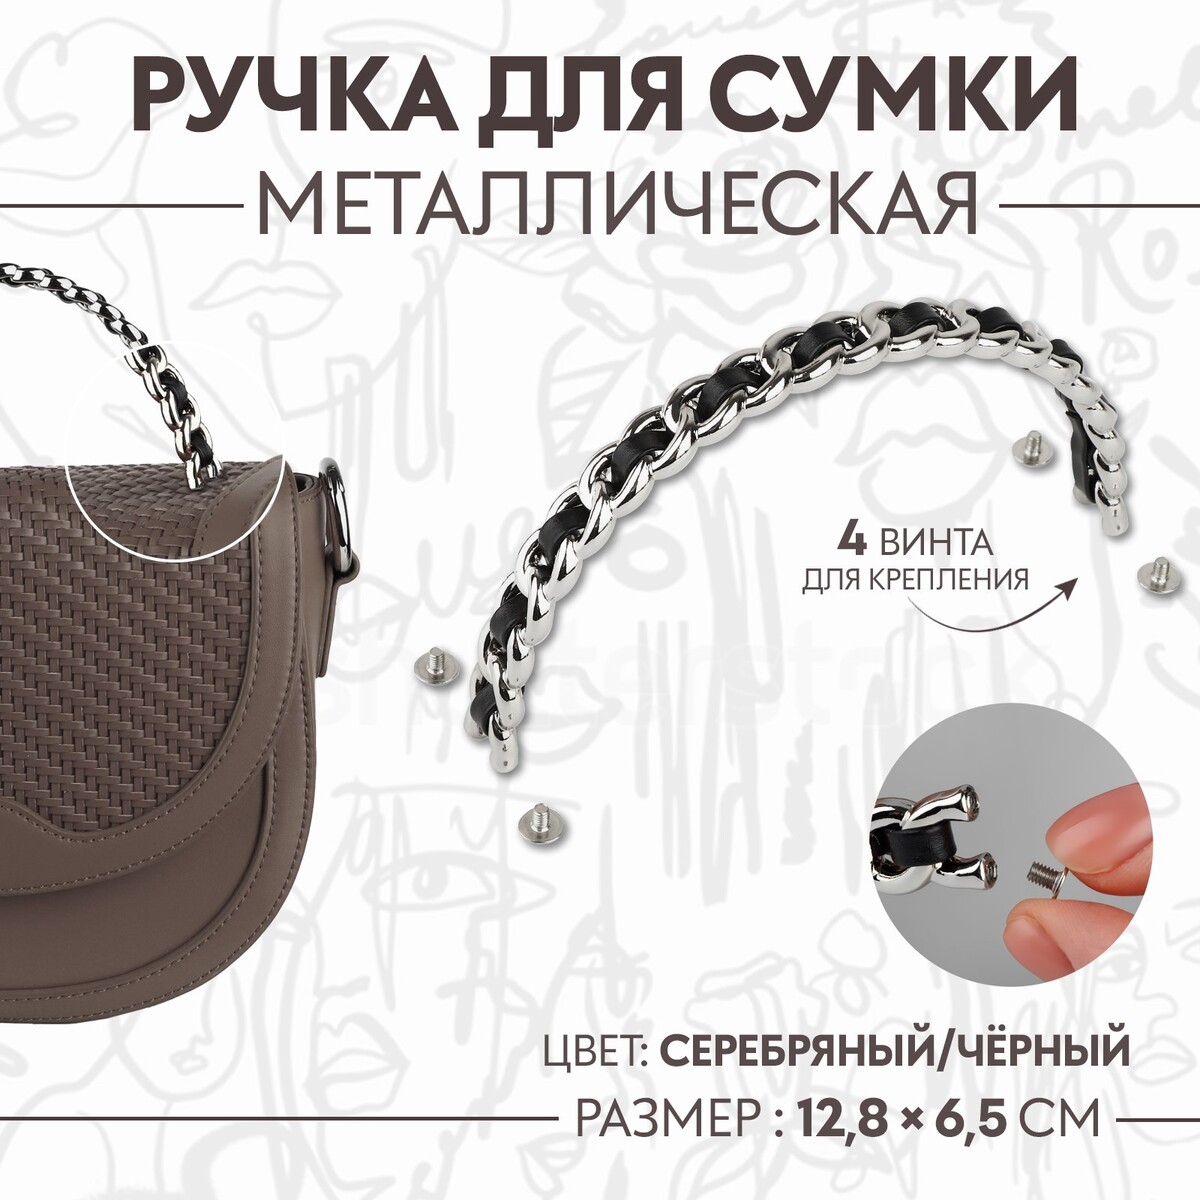 Ручка для сумки, металлическая, с винтами для крепления, 12,8 × 6,5 см, цвет серебряный/черный туарег серебряный мираж